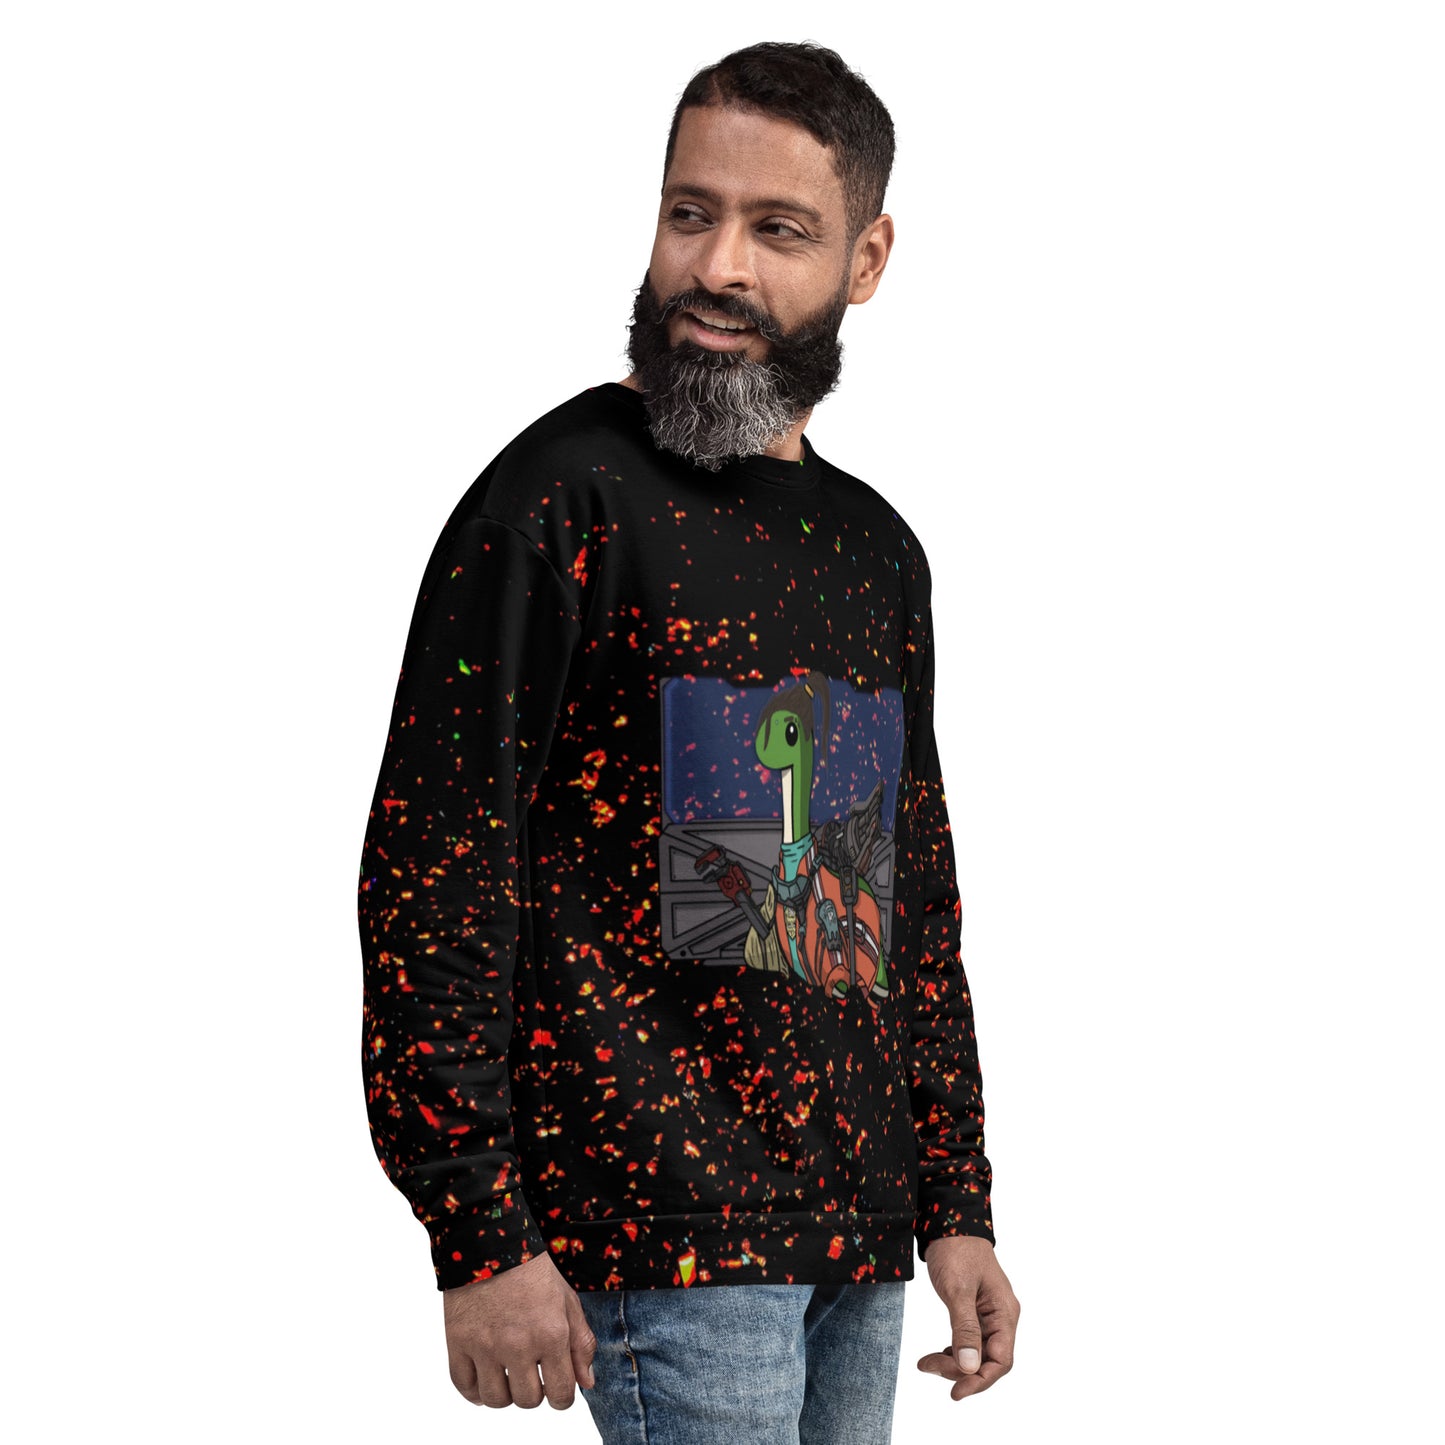 Rampart Nessie All-Over Print Jumper/Sweatshirt (Apex Legends)